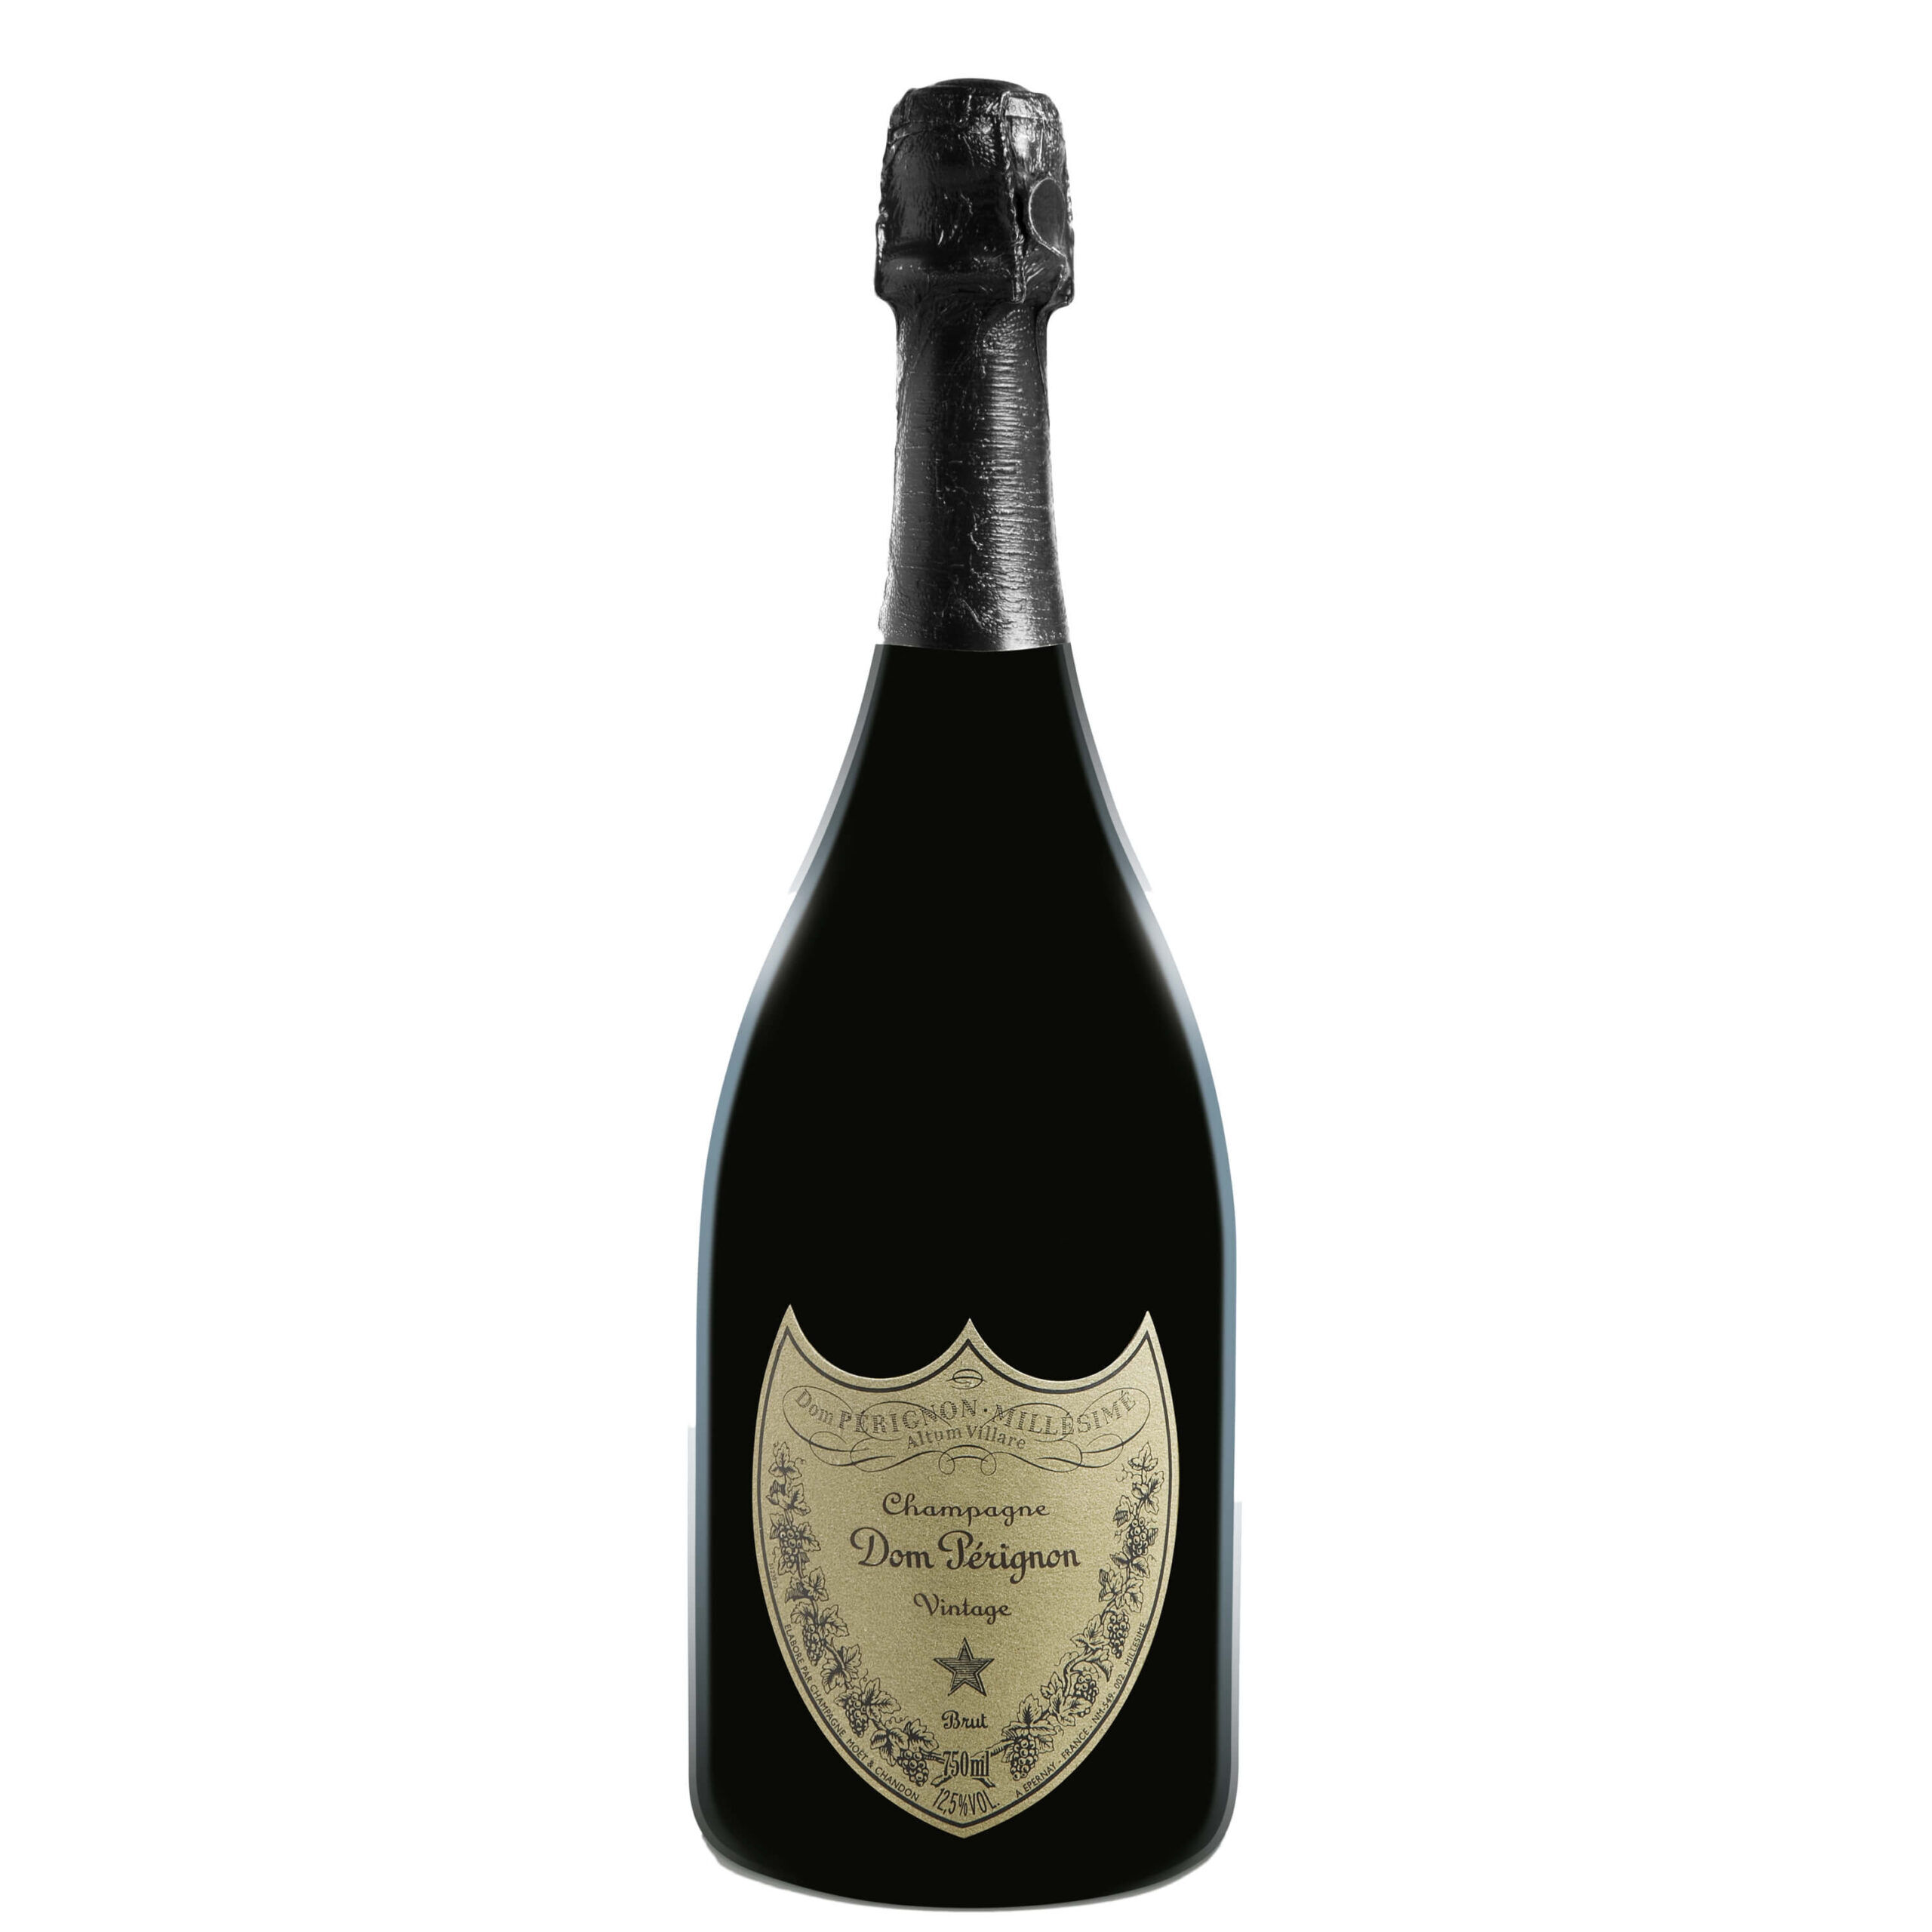 Laciviltadelbere Champagne Brut 2010 Magnum Dom Pèrignon